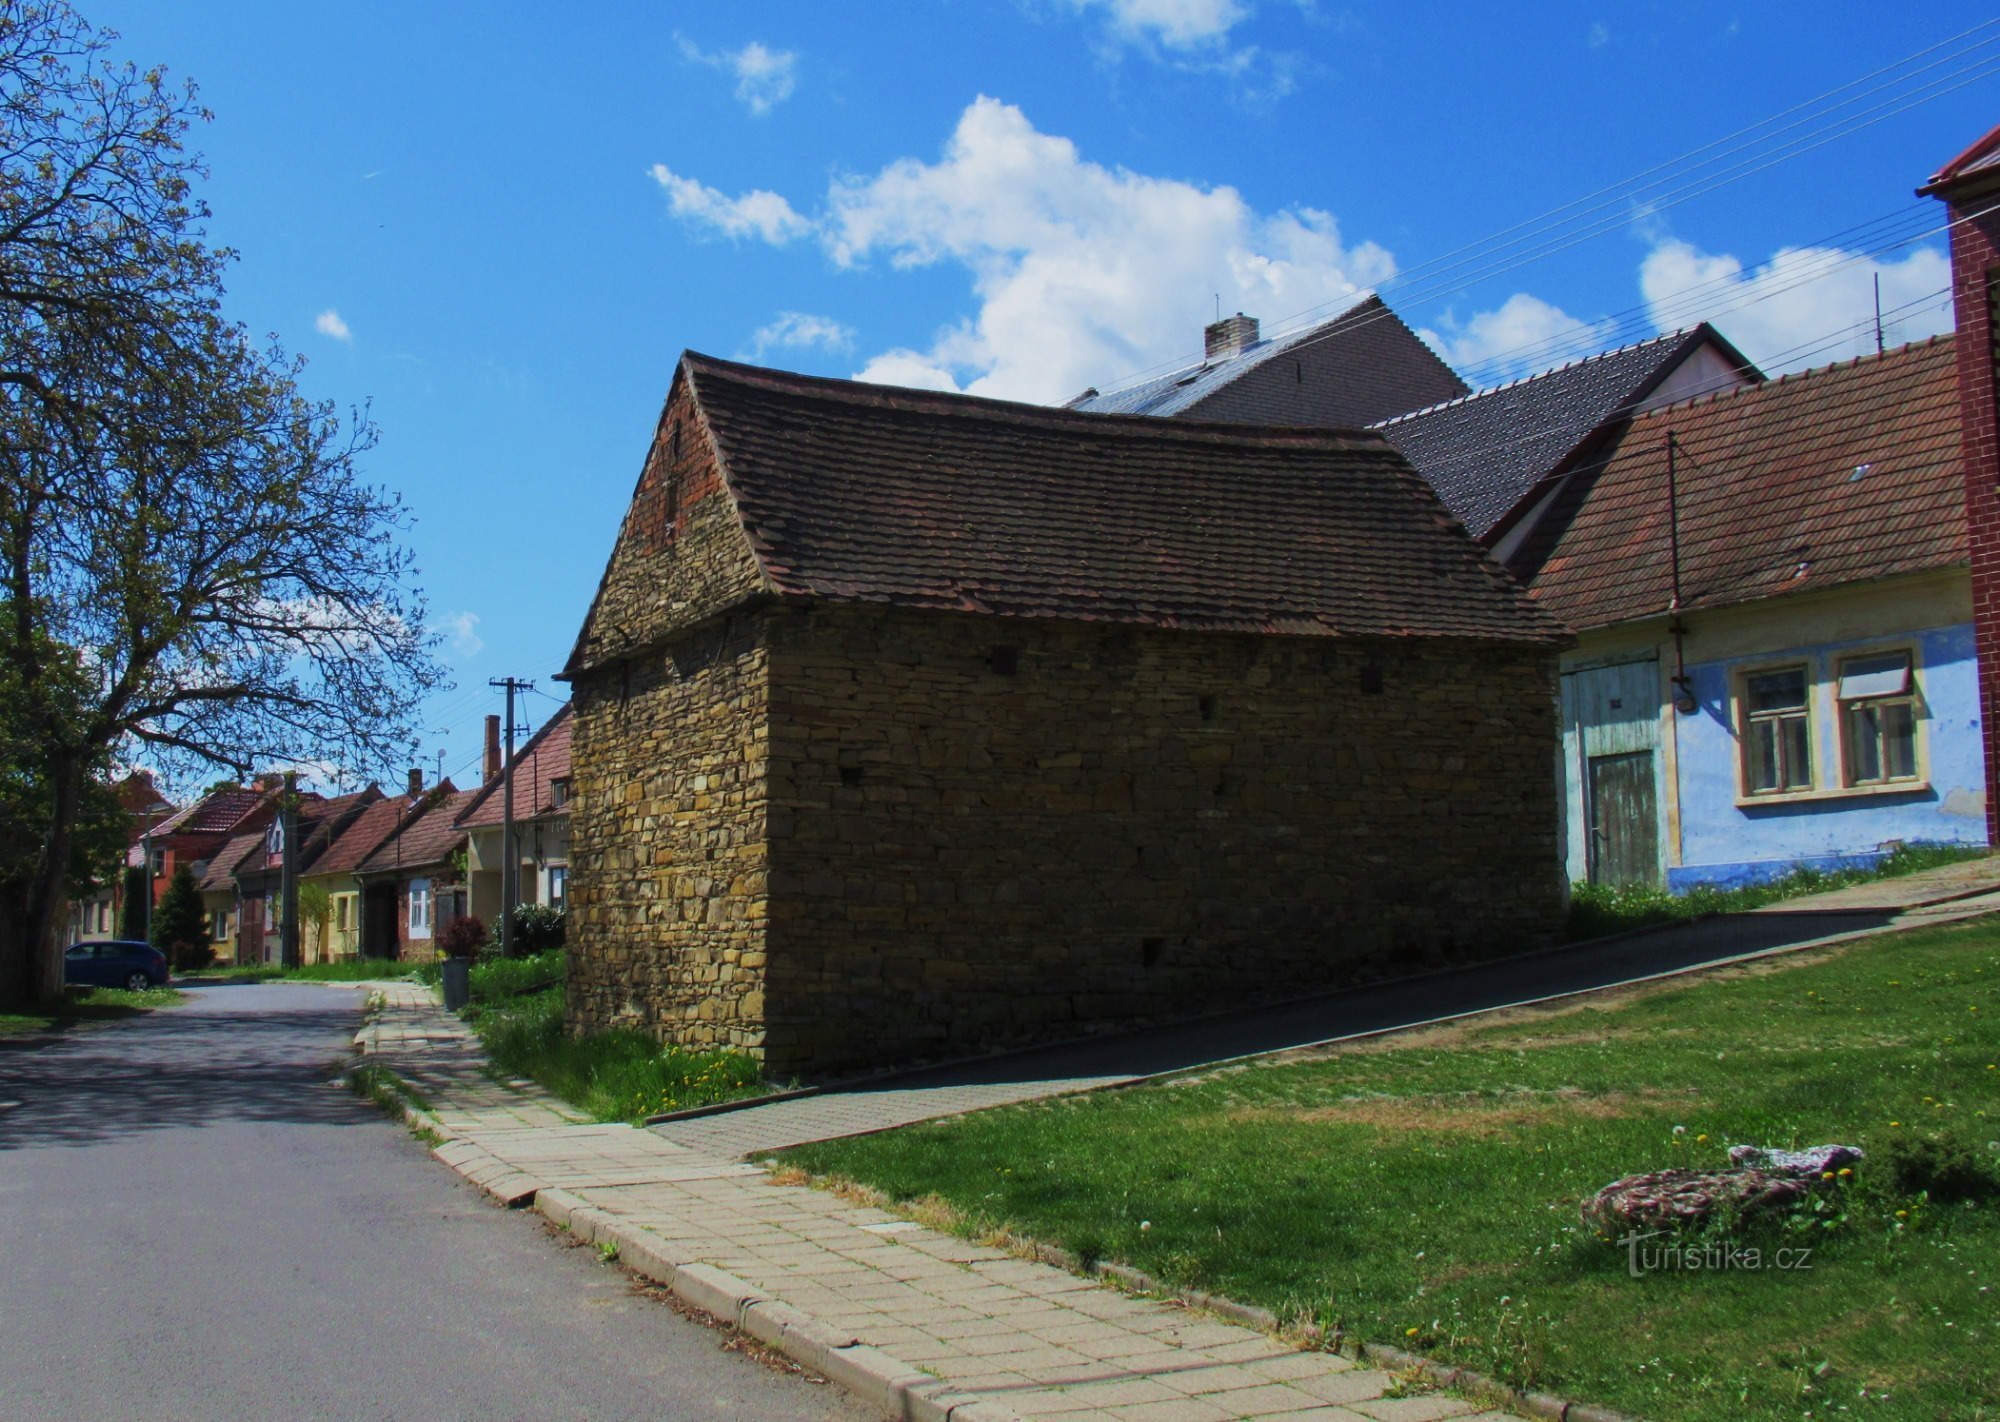 Hus av folklig arkitektur i byn Hrubá Vrbka i Slovácko